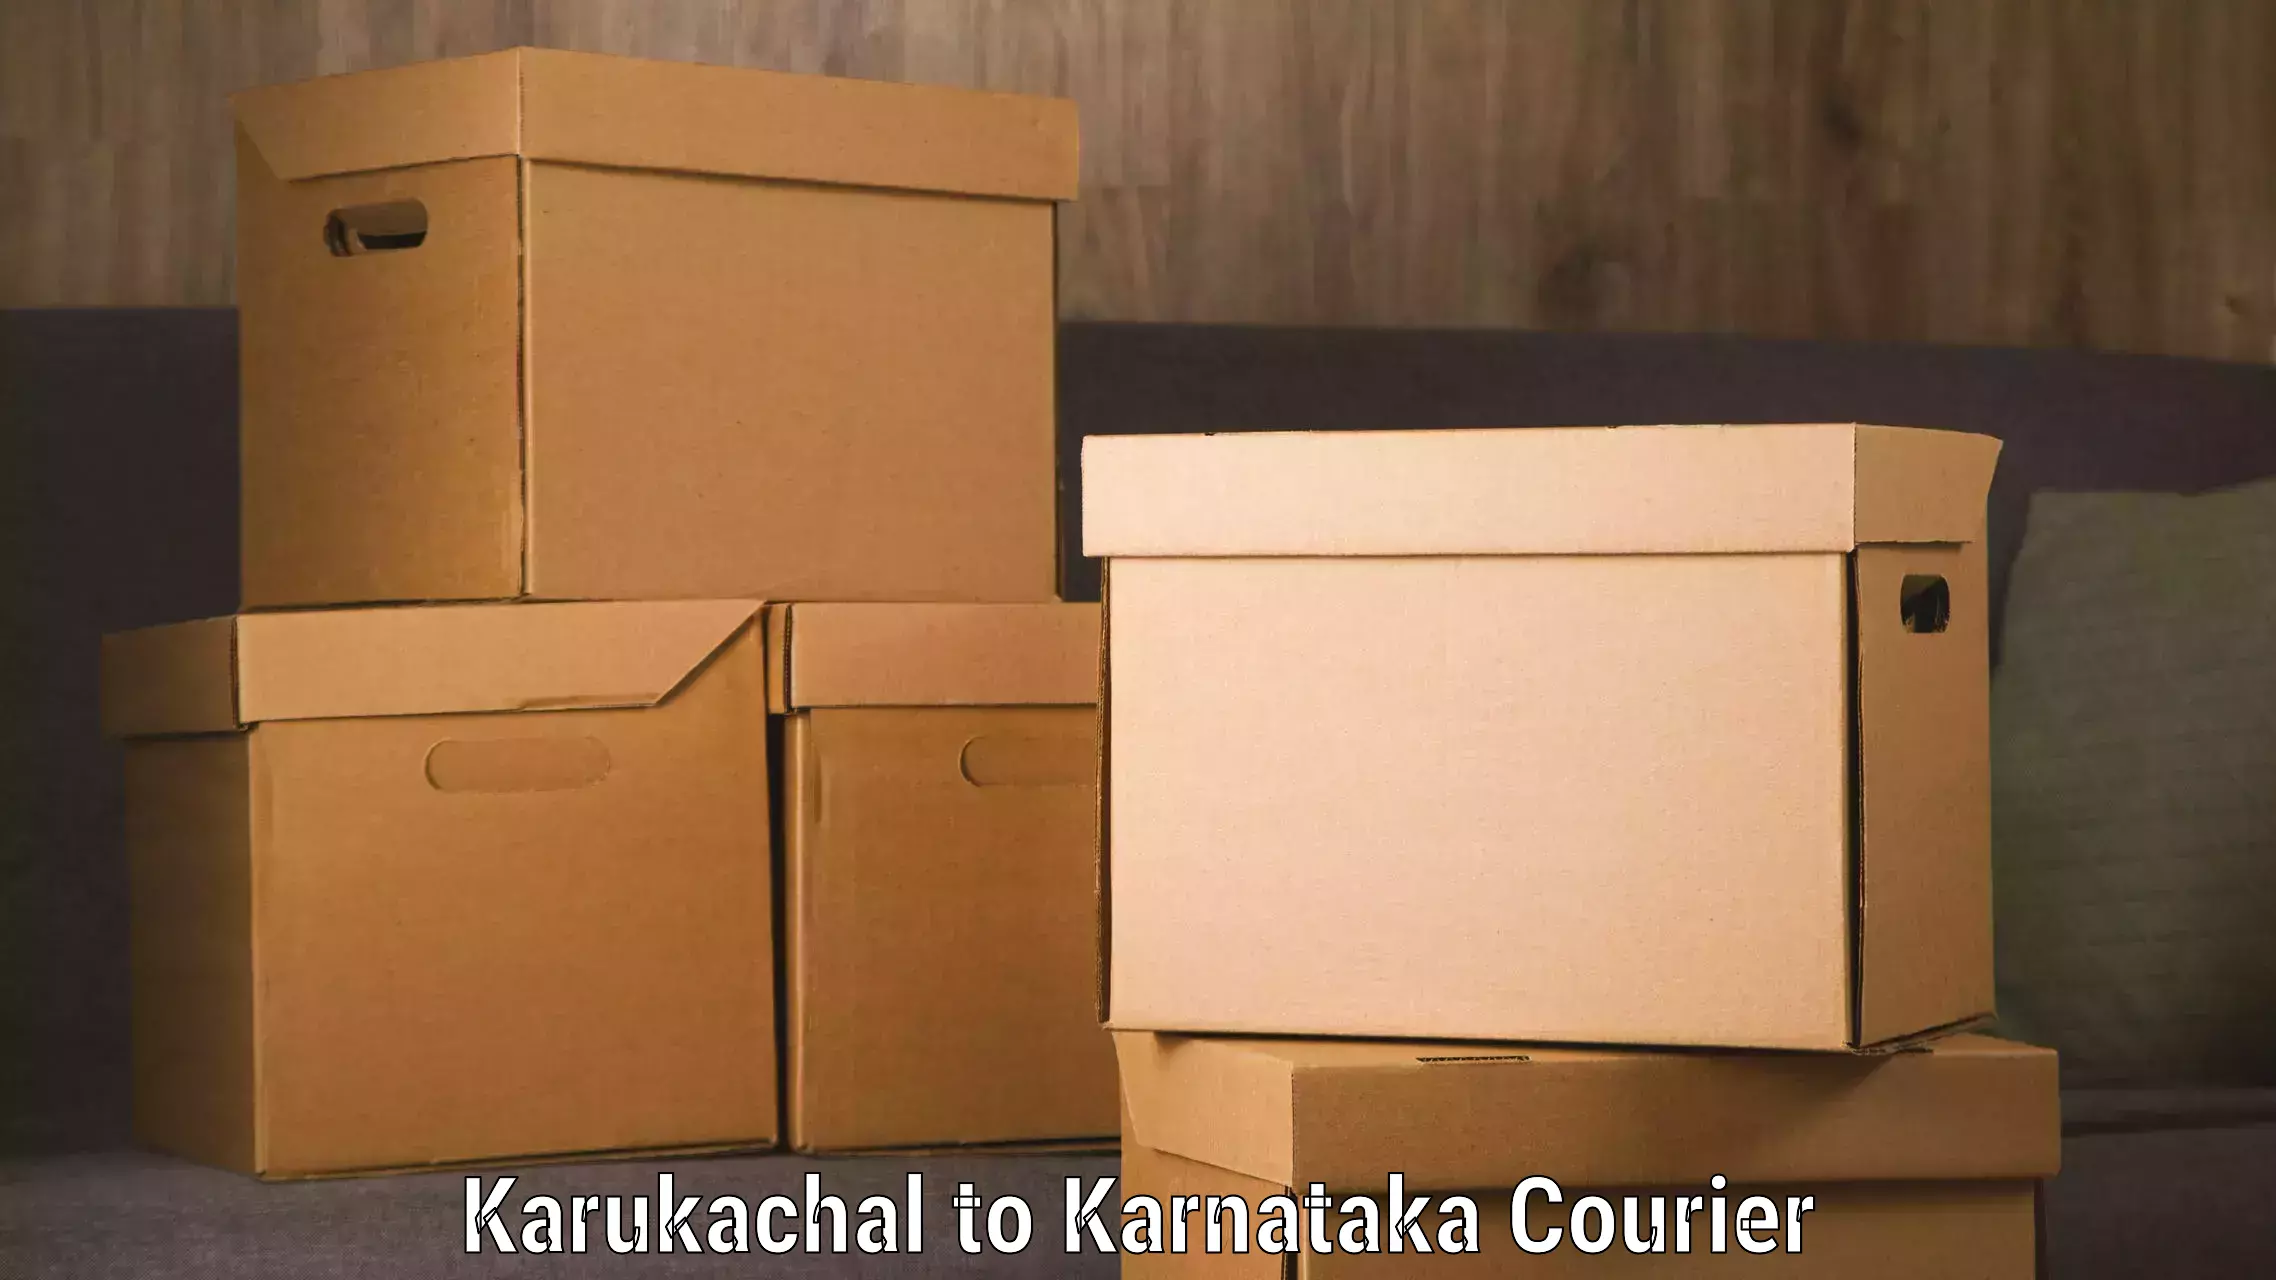 Efficient cargo services Karukachal to Karnataka